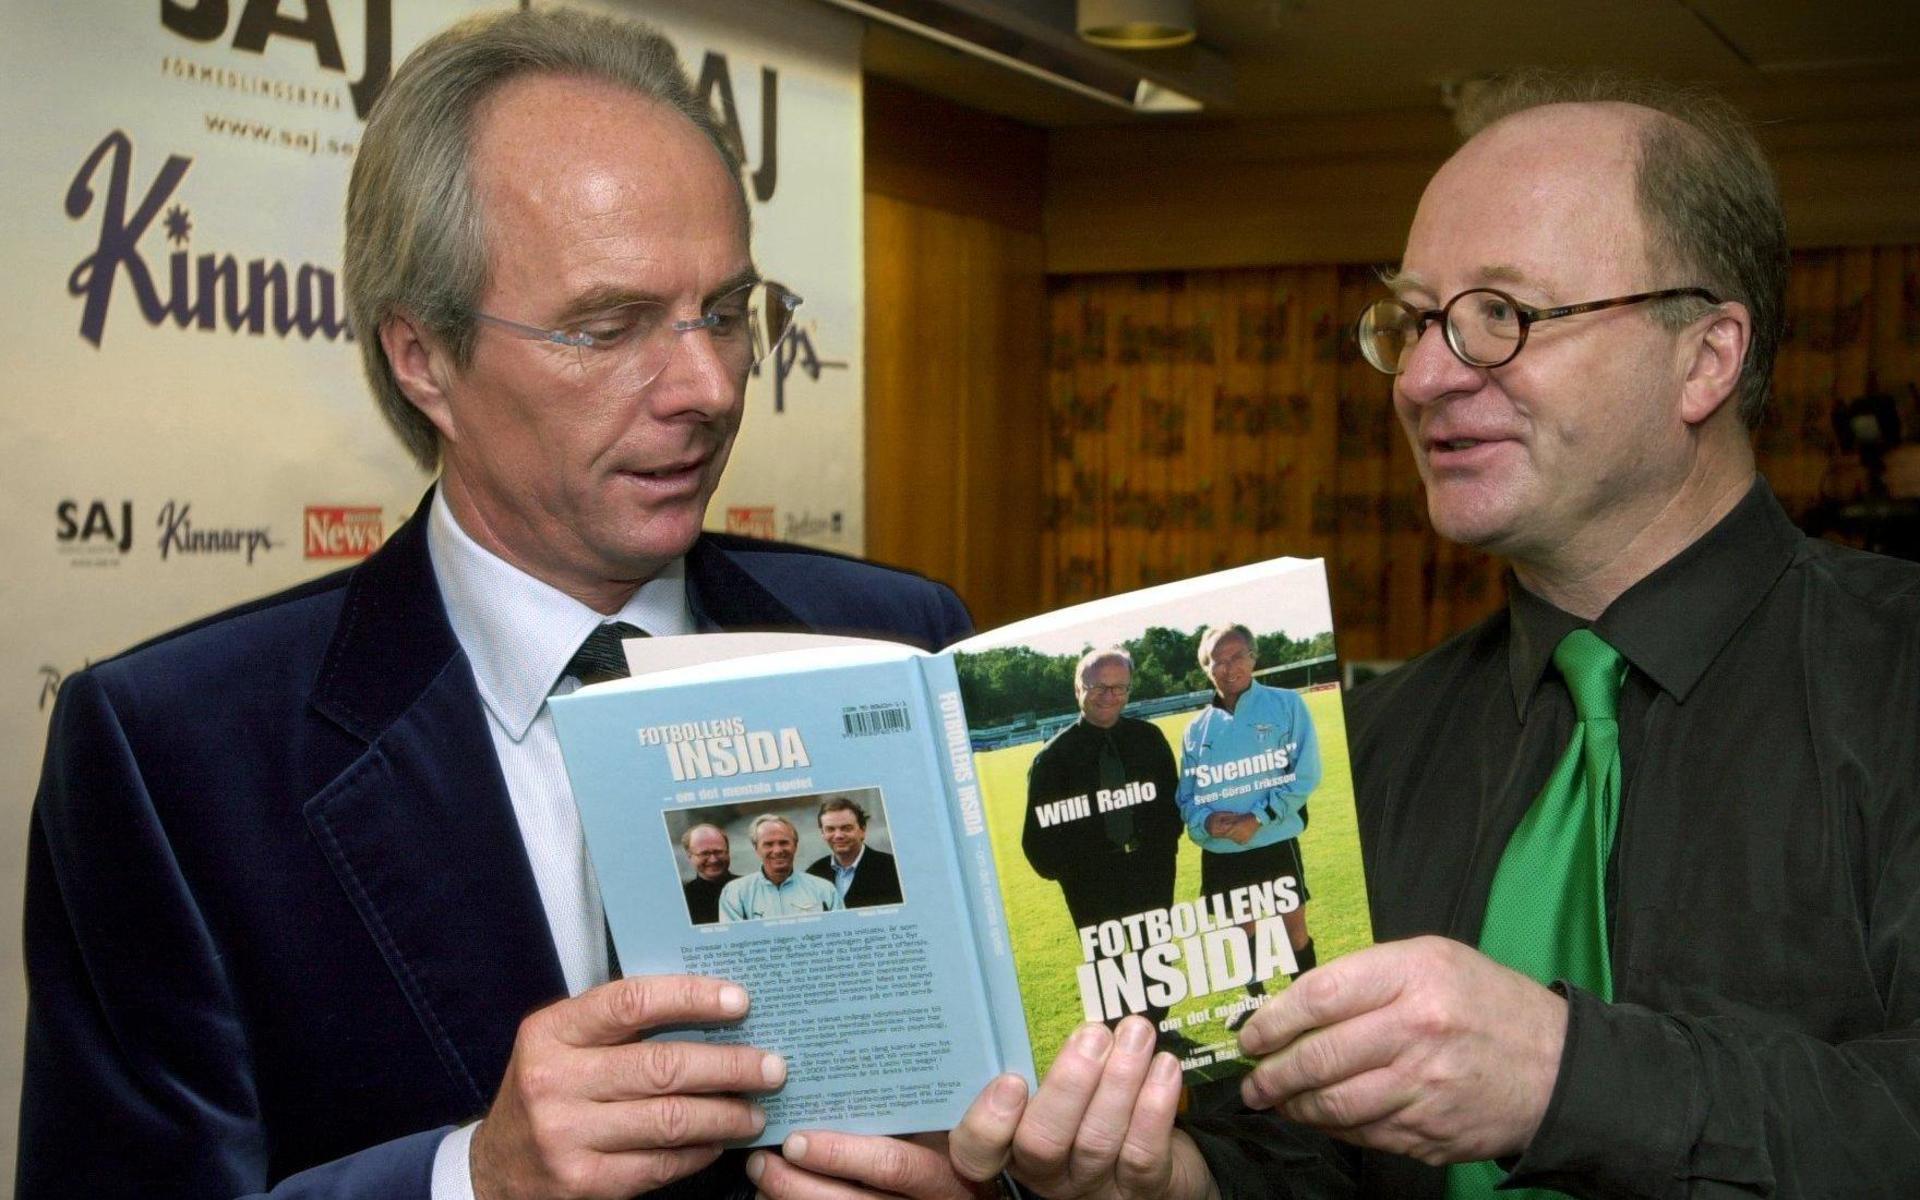 Sven-Göran Eriksson och Willi Railo jobbade tätt tillsammans under flera år. 2000 skrev man boken ”Fotnollens insida”.